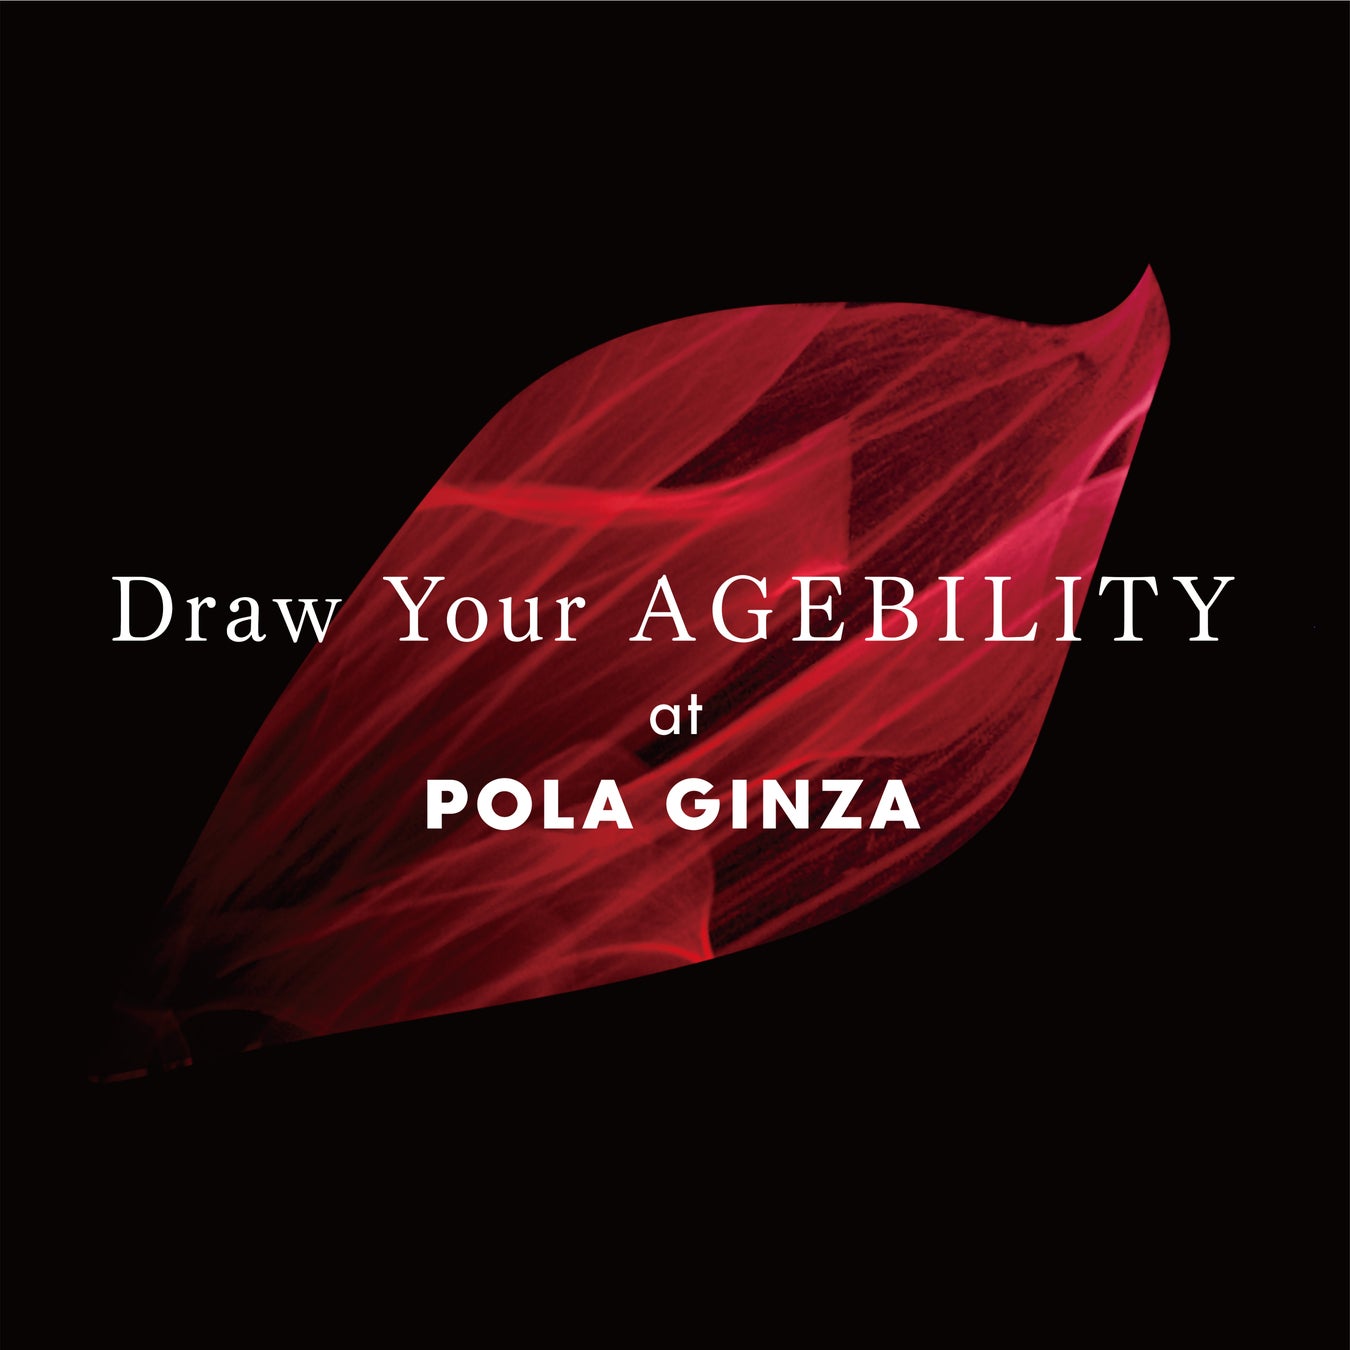 AGEBILITY体感イベント「Draw Your AGEBILITY」 9月1日(木)～9月14日(水)にポーラ ギンザにて開催